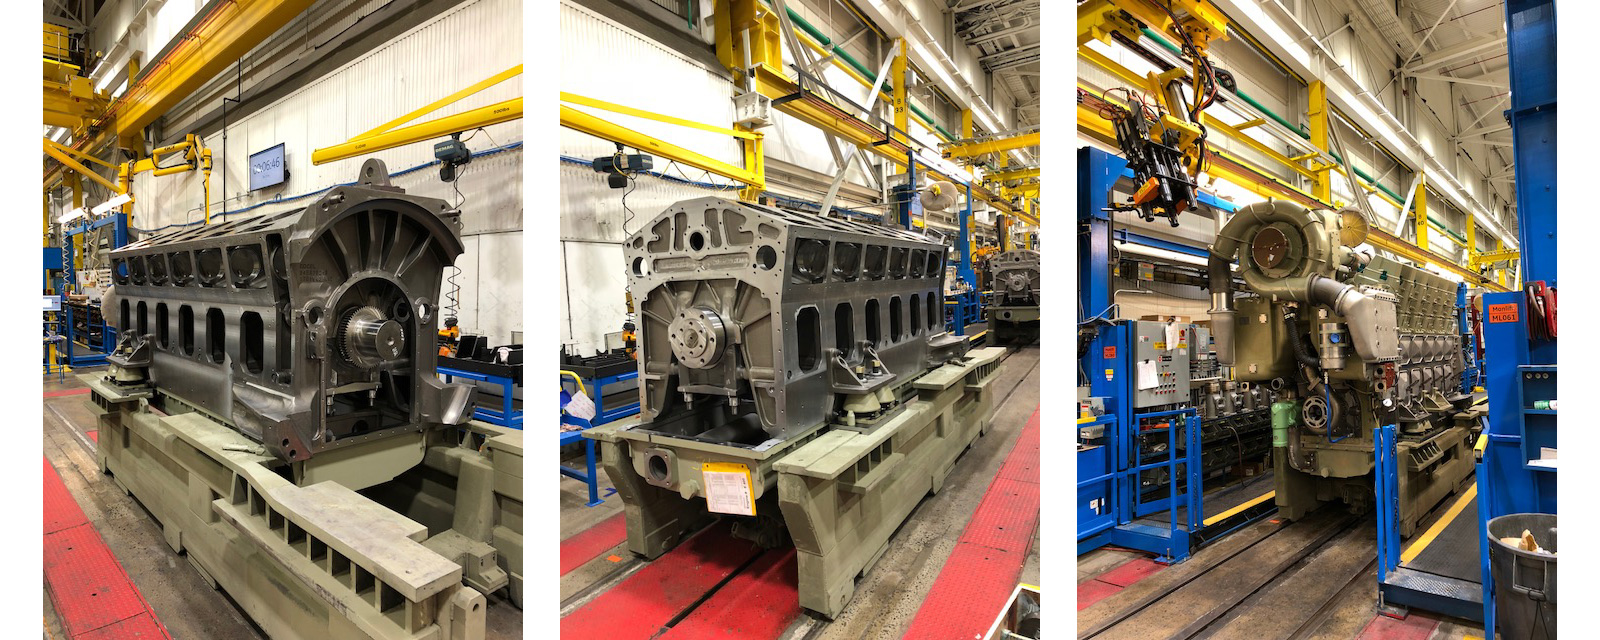  При монтаже локомотива TE33A, который пойдет на рынок Украины, компания GE применяет турбо-двигатель с 12 цилиндрами